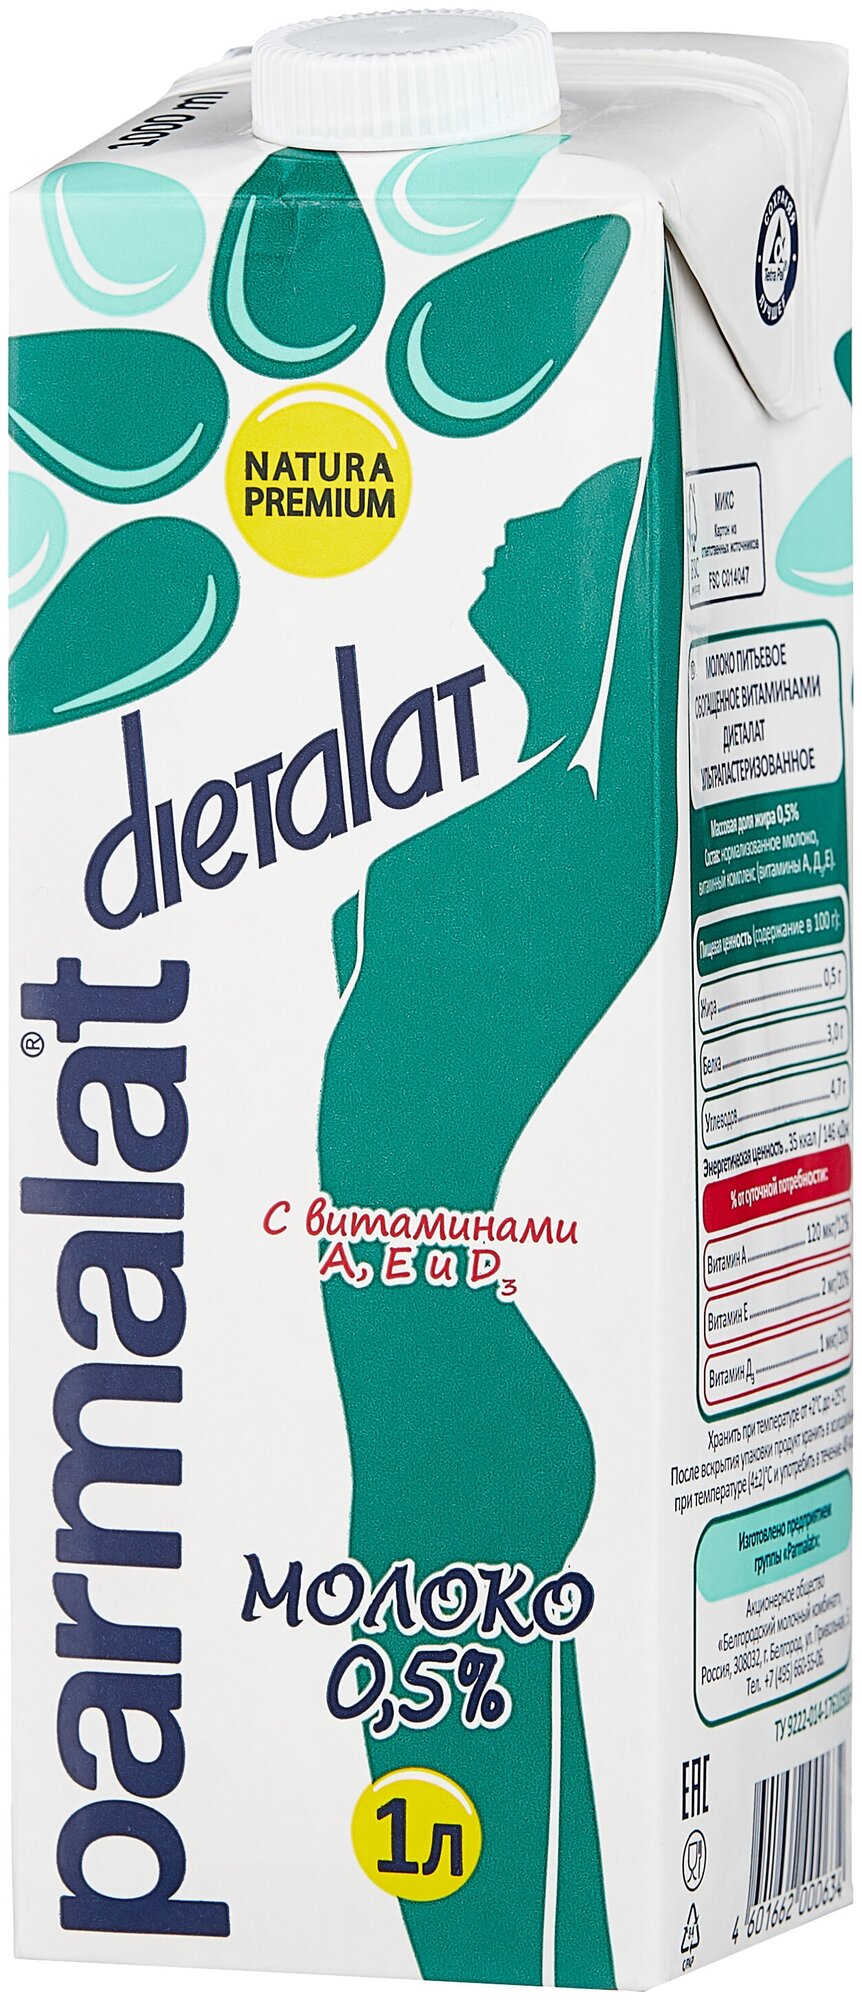 Молоко Parmalat Dietalat ультрапастеризованное витаминизированное 0.5%, 1 л